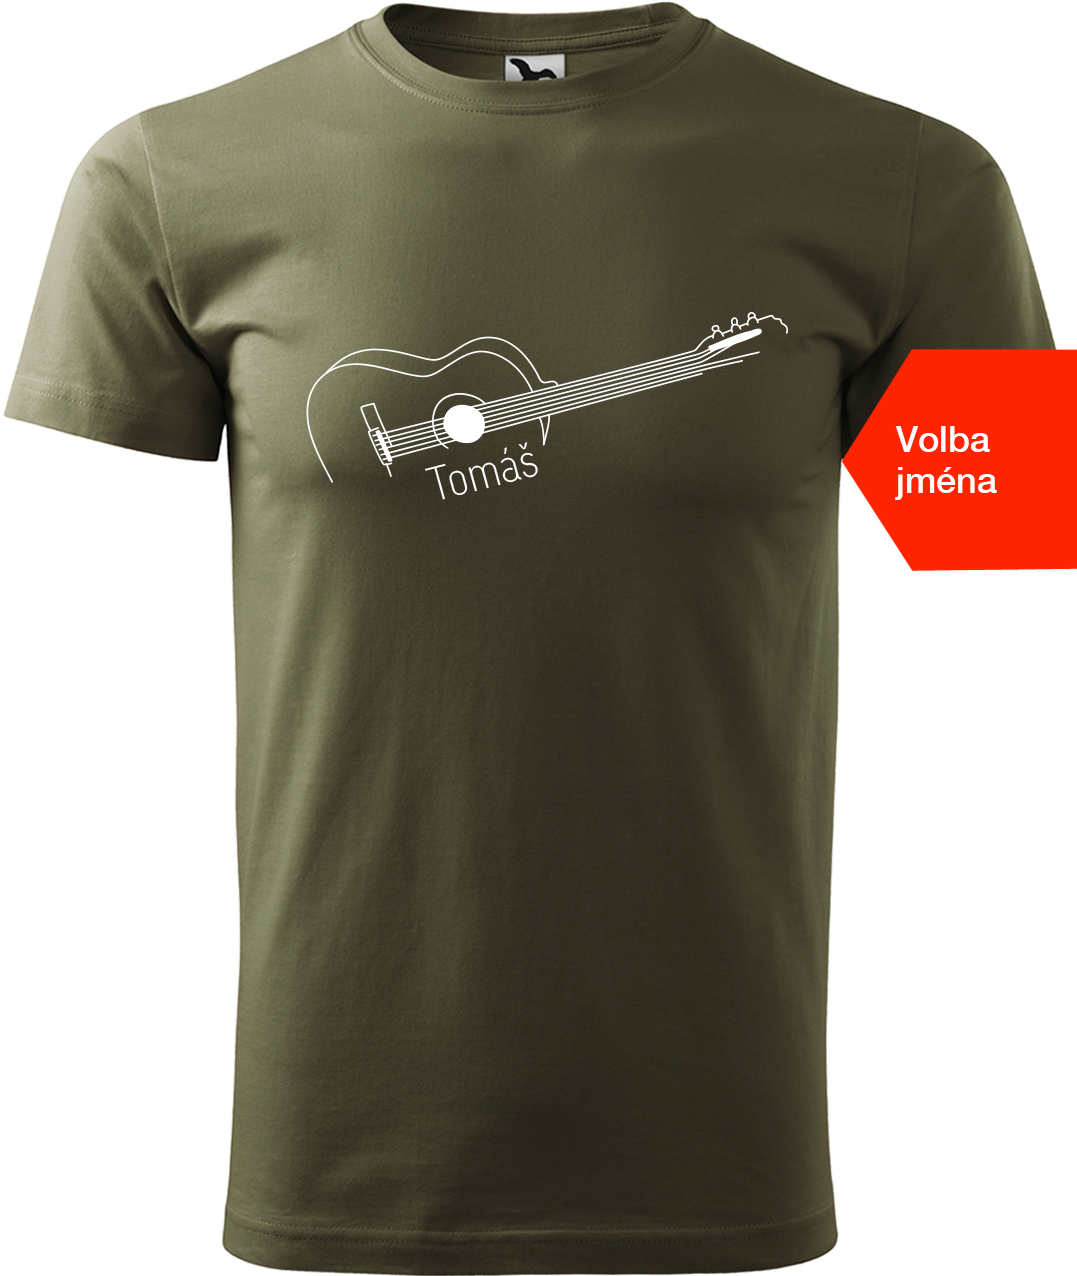 Pánské tričko s kytarou se jménem - Stylizovaná kytara Velikost: S, Barva: Military (69), Střih: pánský